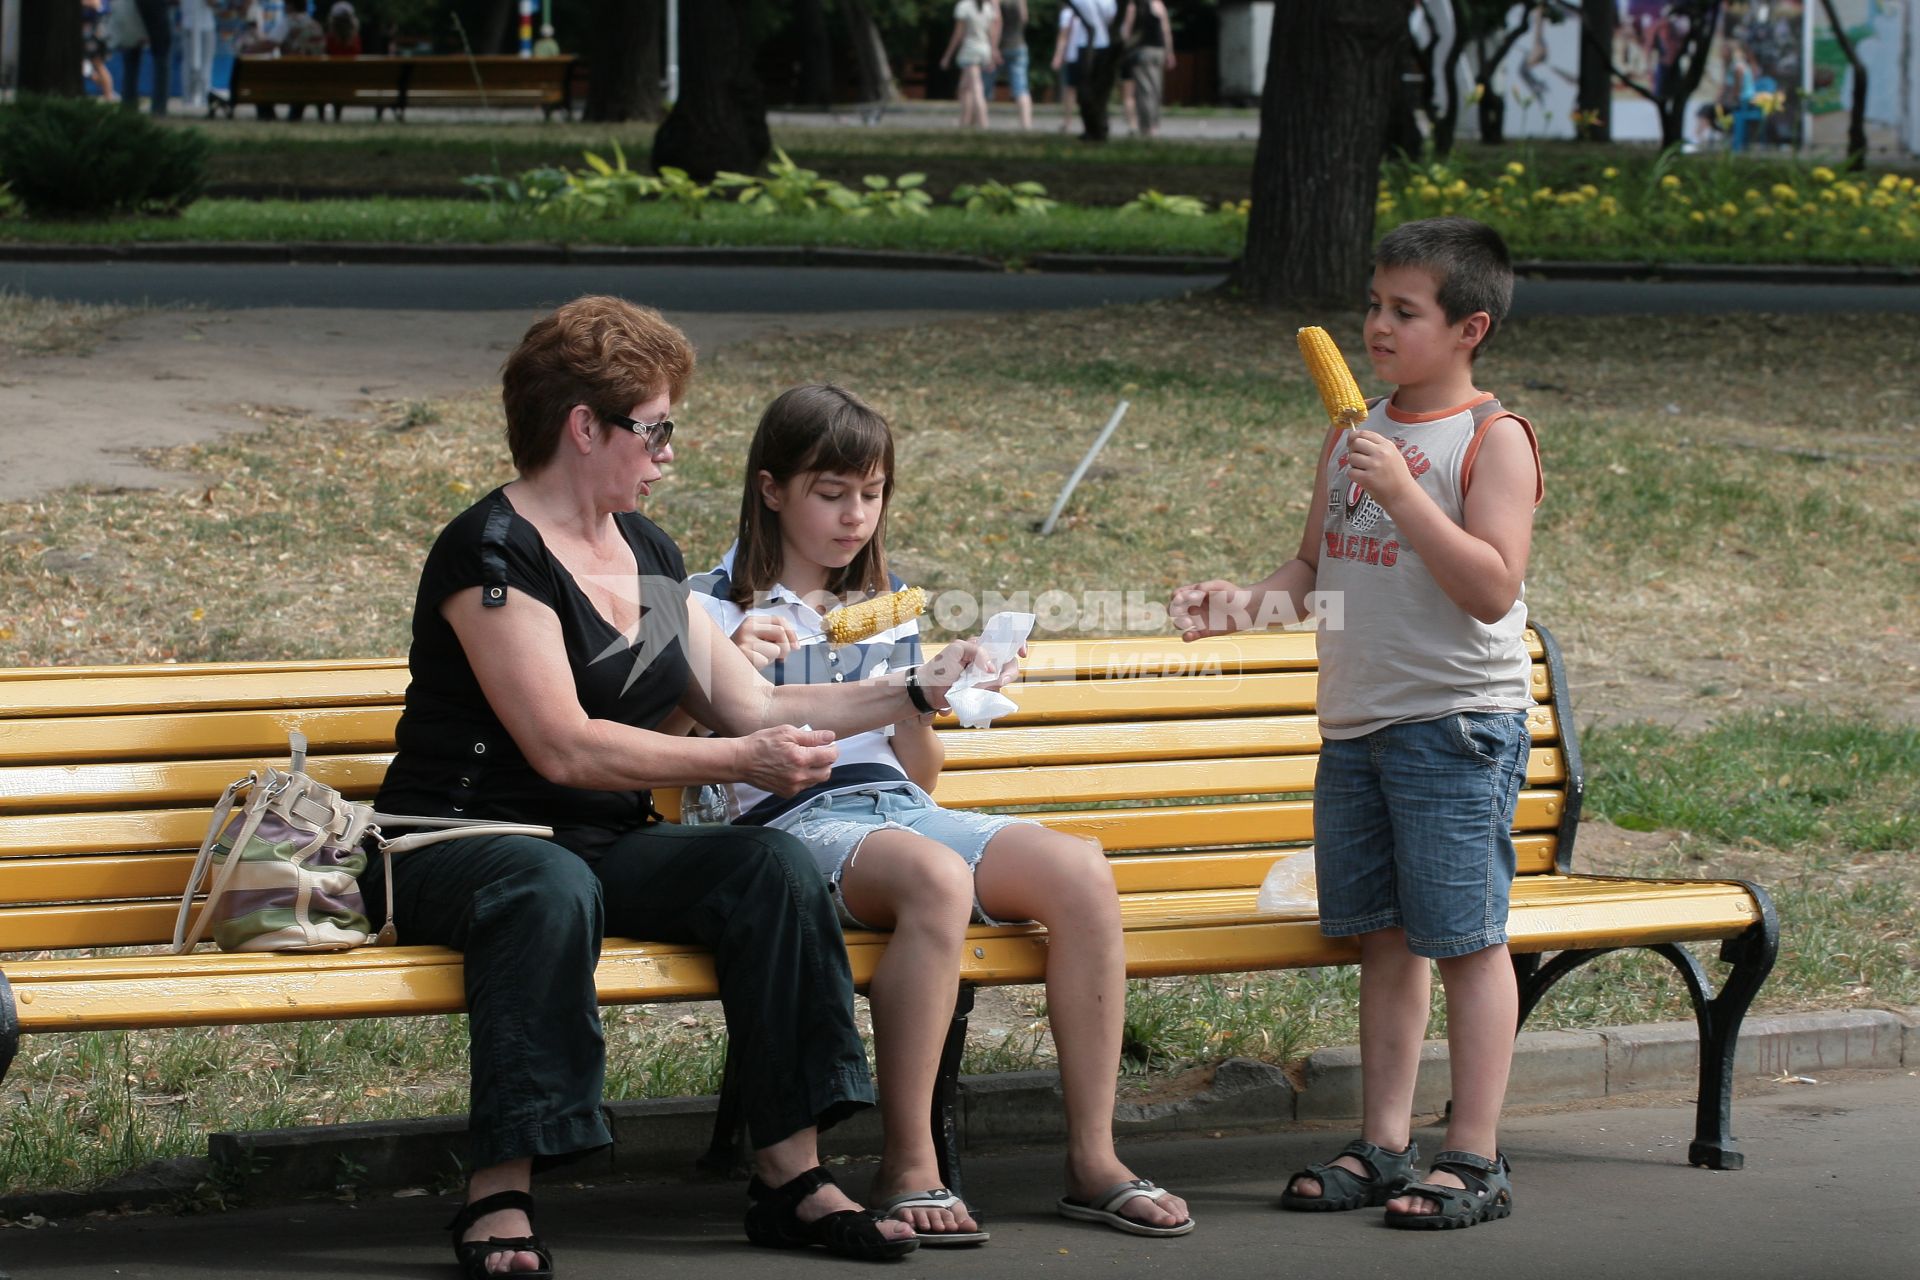 Парк им. Горького, Отдыхающие люди в Парке. 6 июля 2010 г.